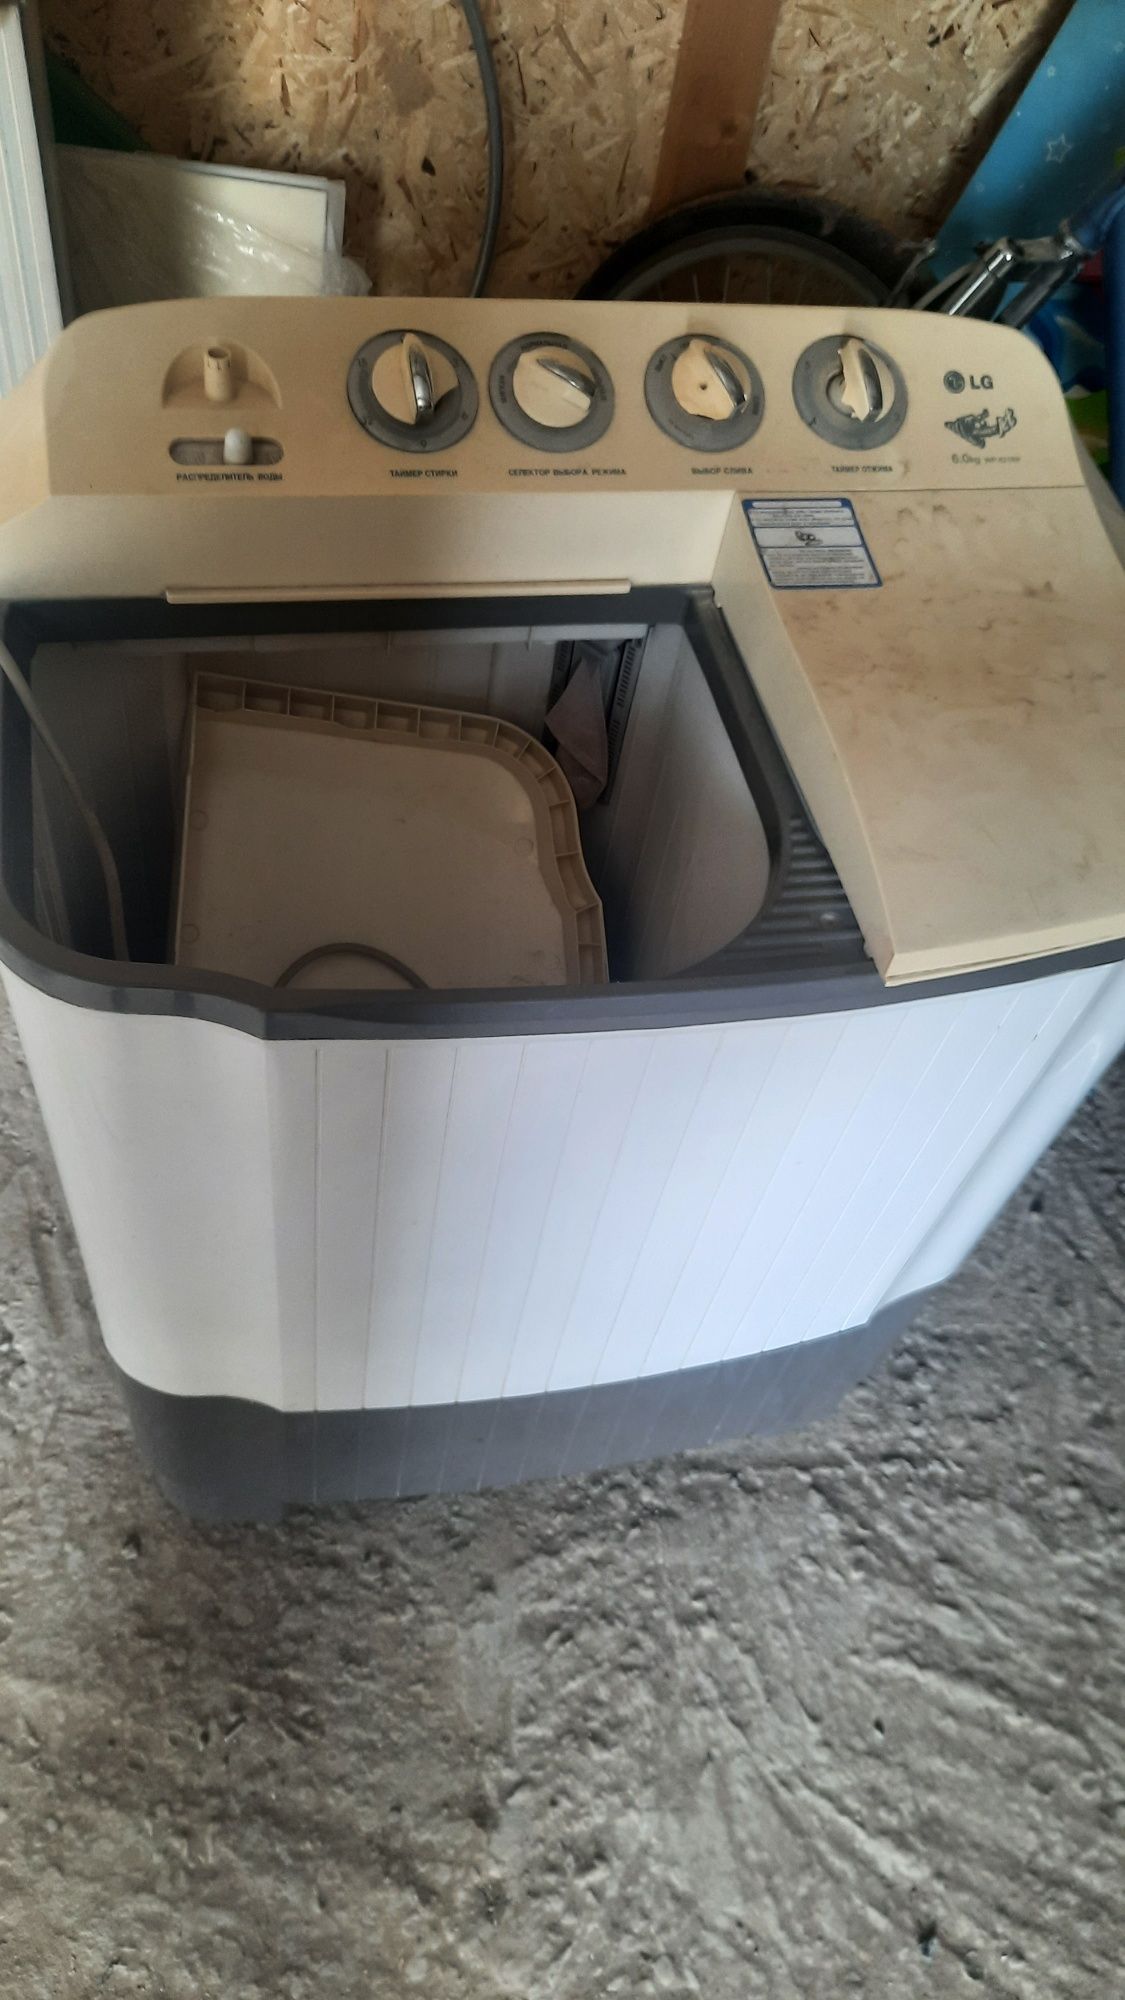 Срочно продам рабочий стиральный машина LG полуавтомат